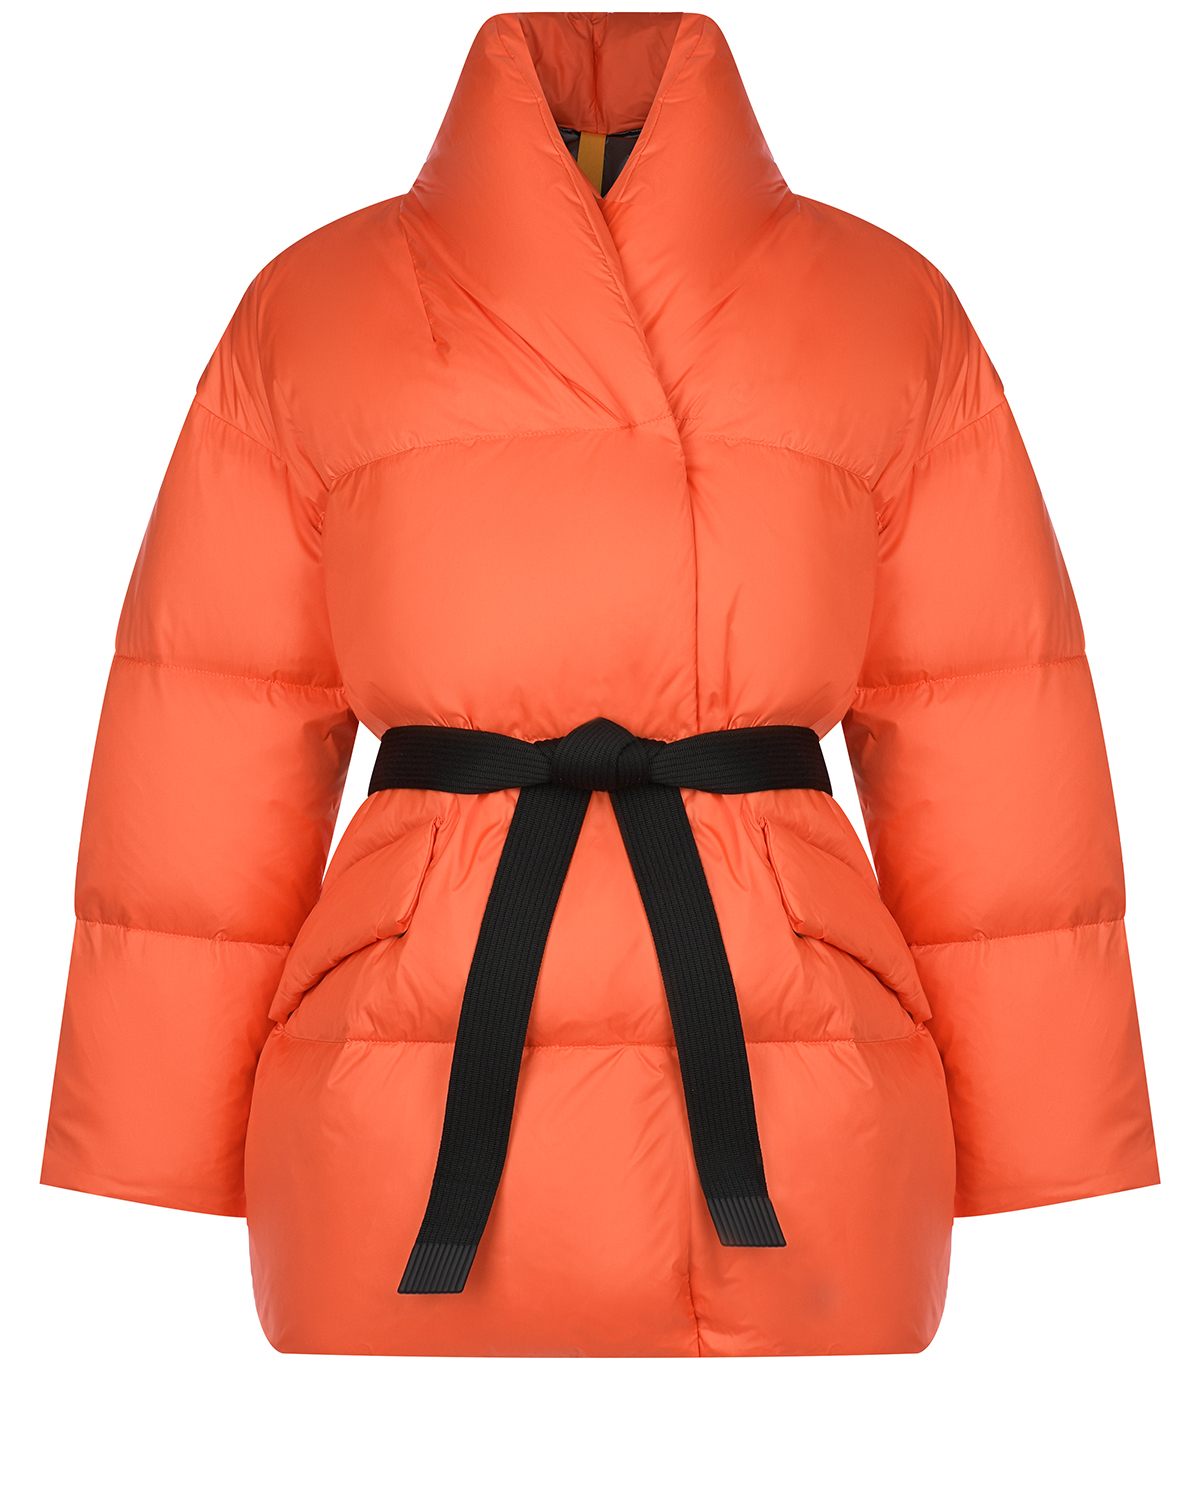 Оранжевая куртка с черным поясом Naumi, размер 36, цвет оранжевый - фото 1